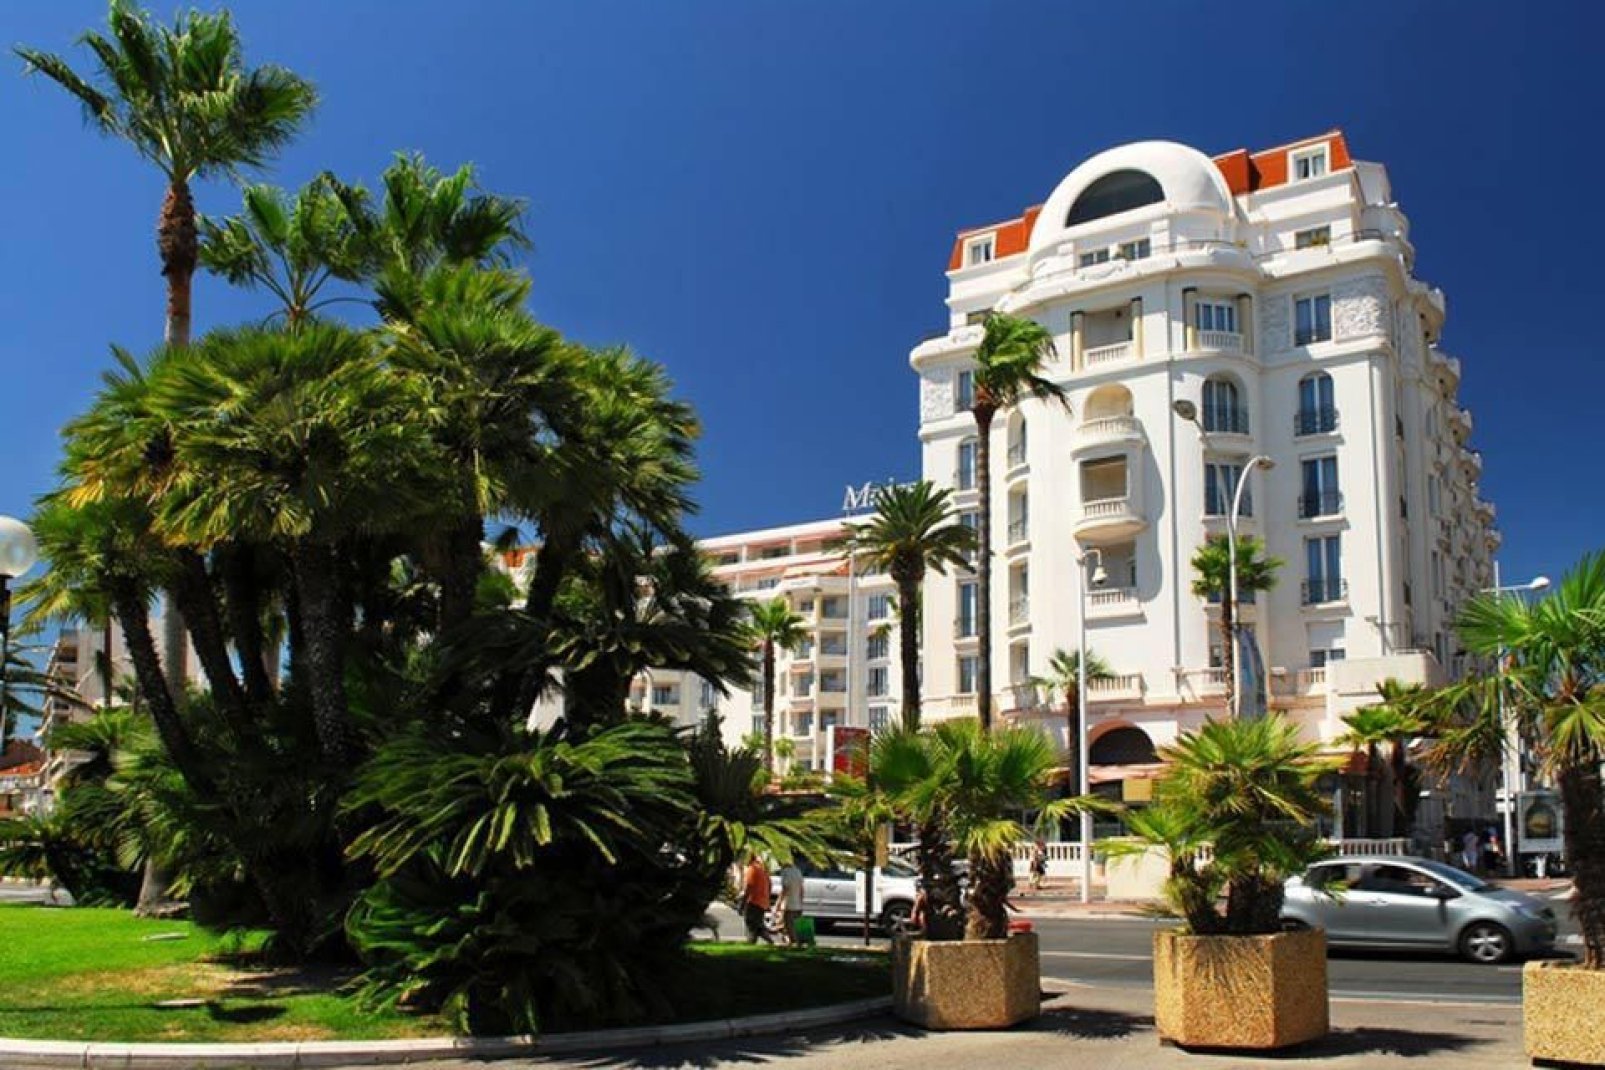 Cannes, famosa por su prestigio y su riqueza, es una ciudad menos superficial de lo que parece a primera vista.